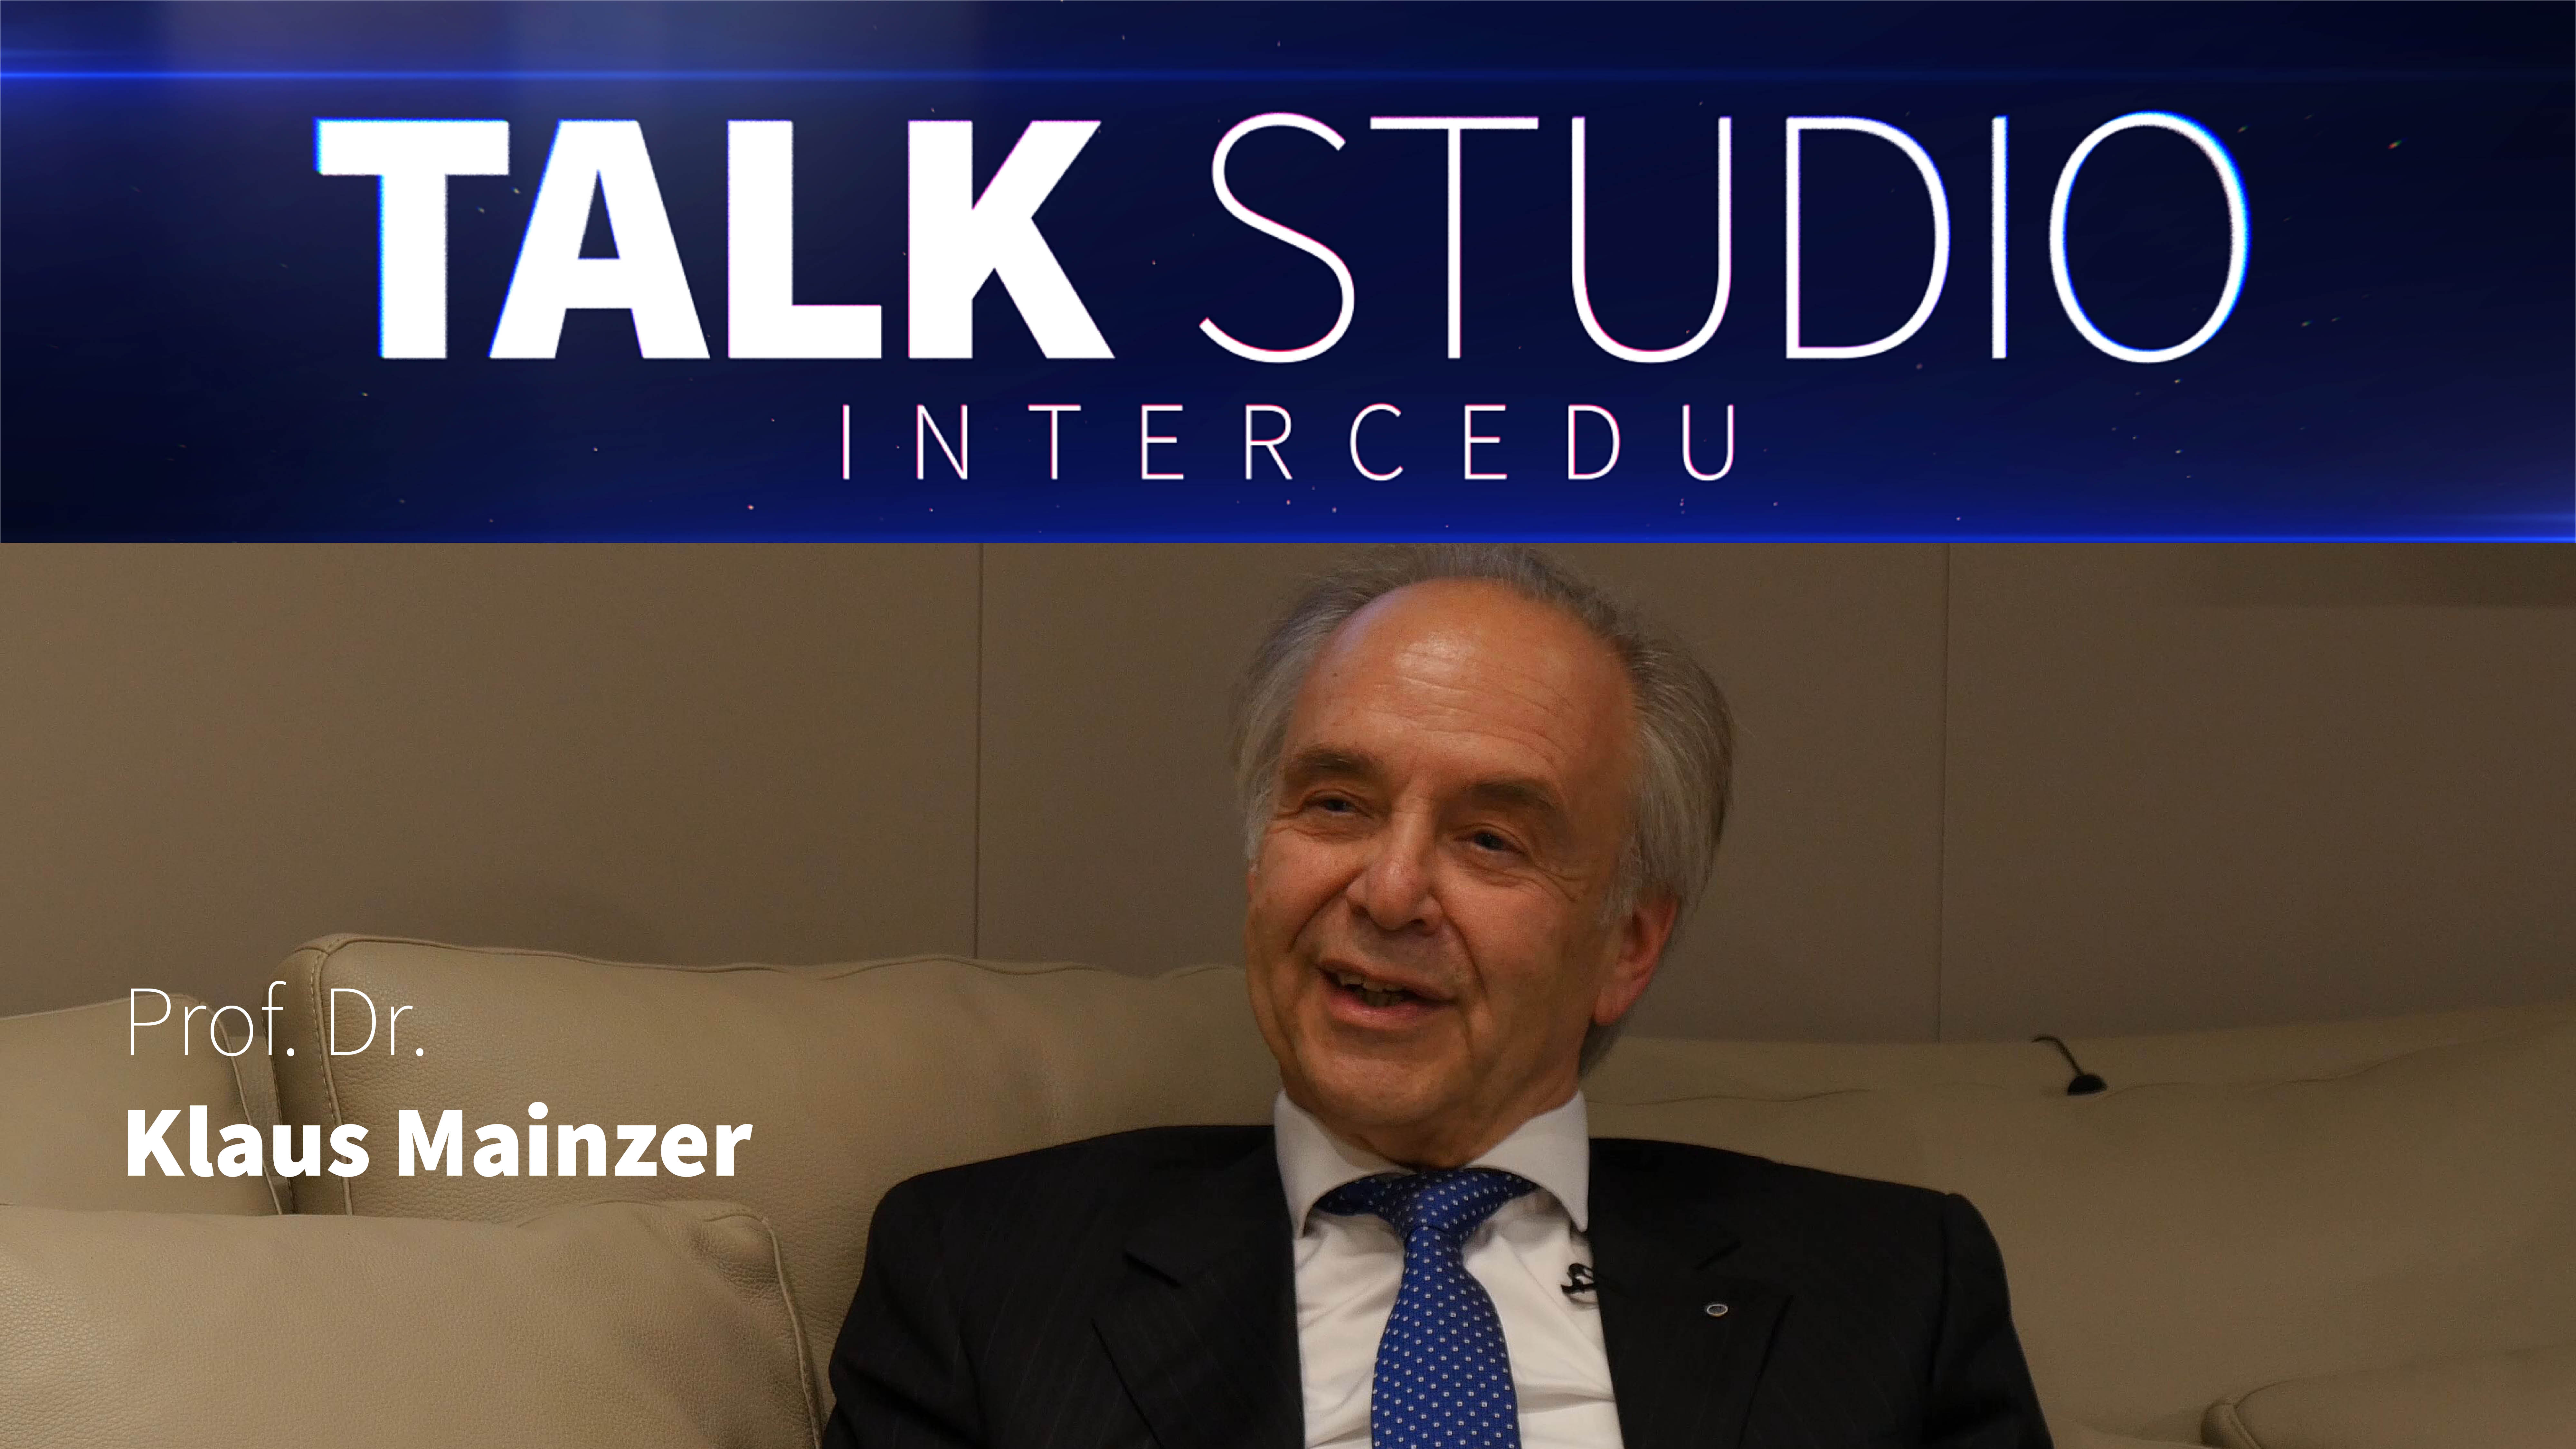 TALK STUDIO INTERCEDU: Prof. Dr. Klaus Mainzer